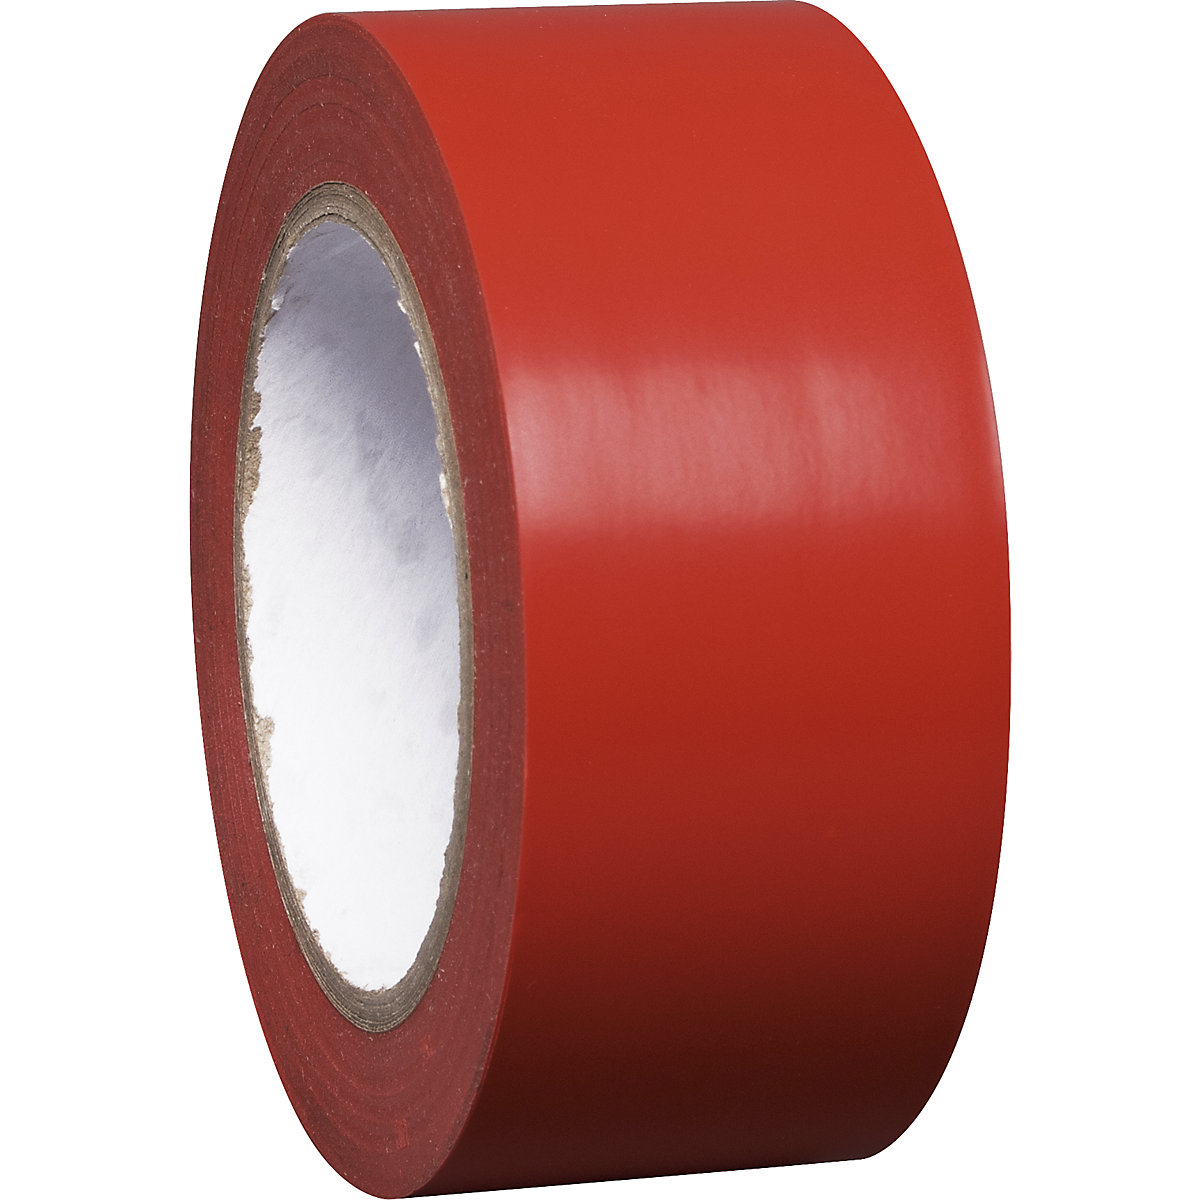 Talni označevalni trak iz vinila, enobarven, širina 50 mm, rdeč, DE 8 rol-7